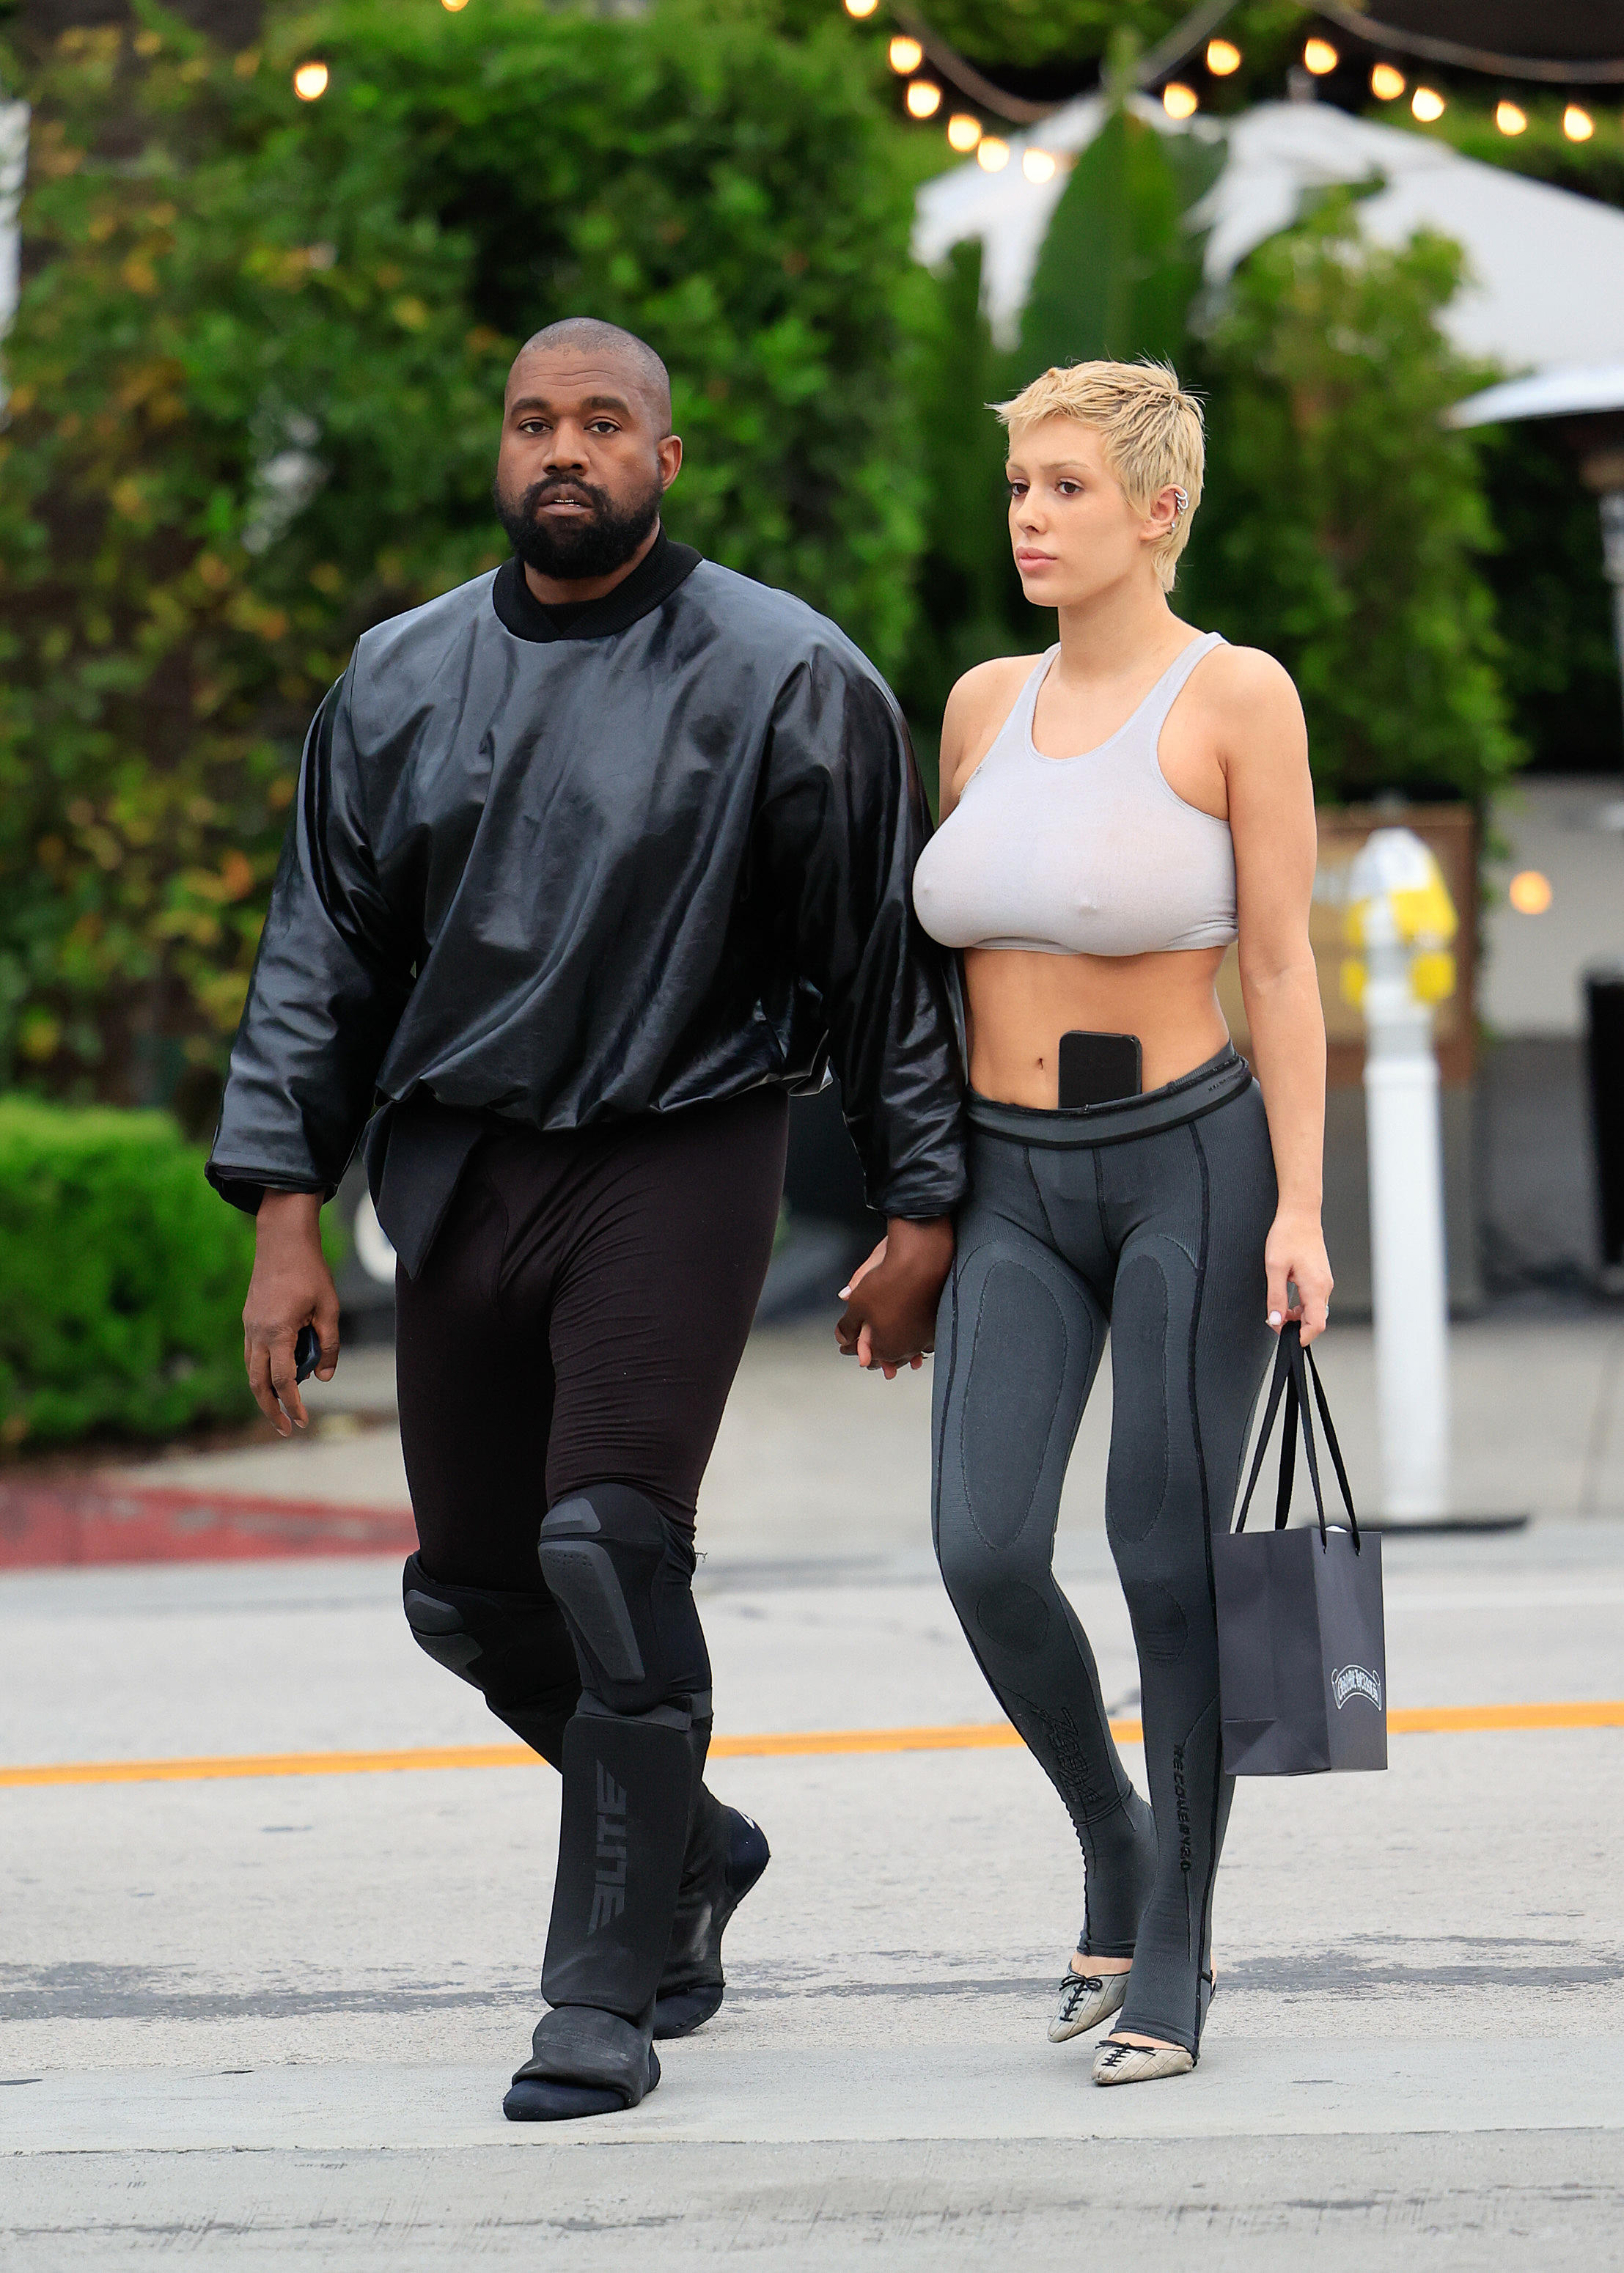 Kanye West wears knee-length fur coat in New York